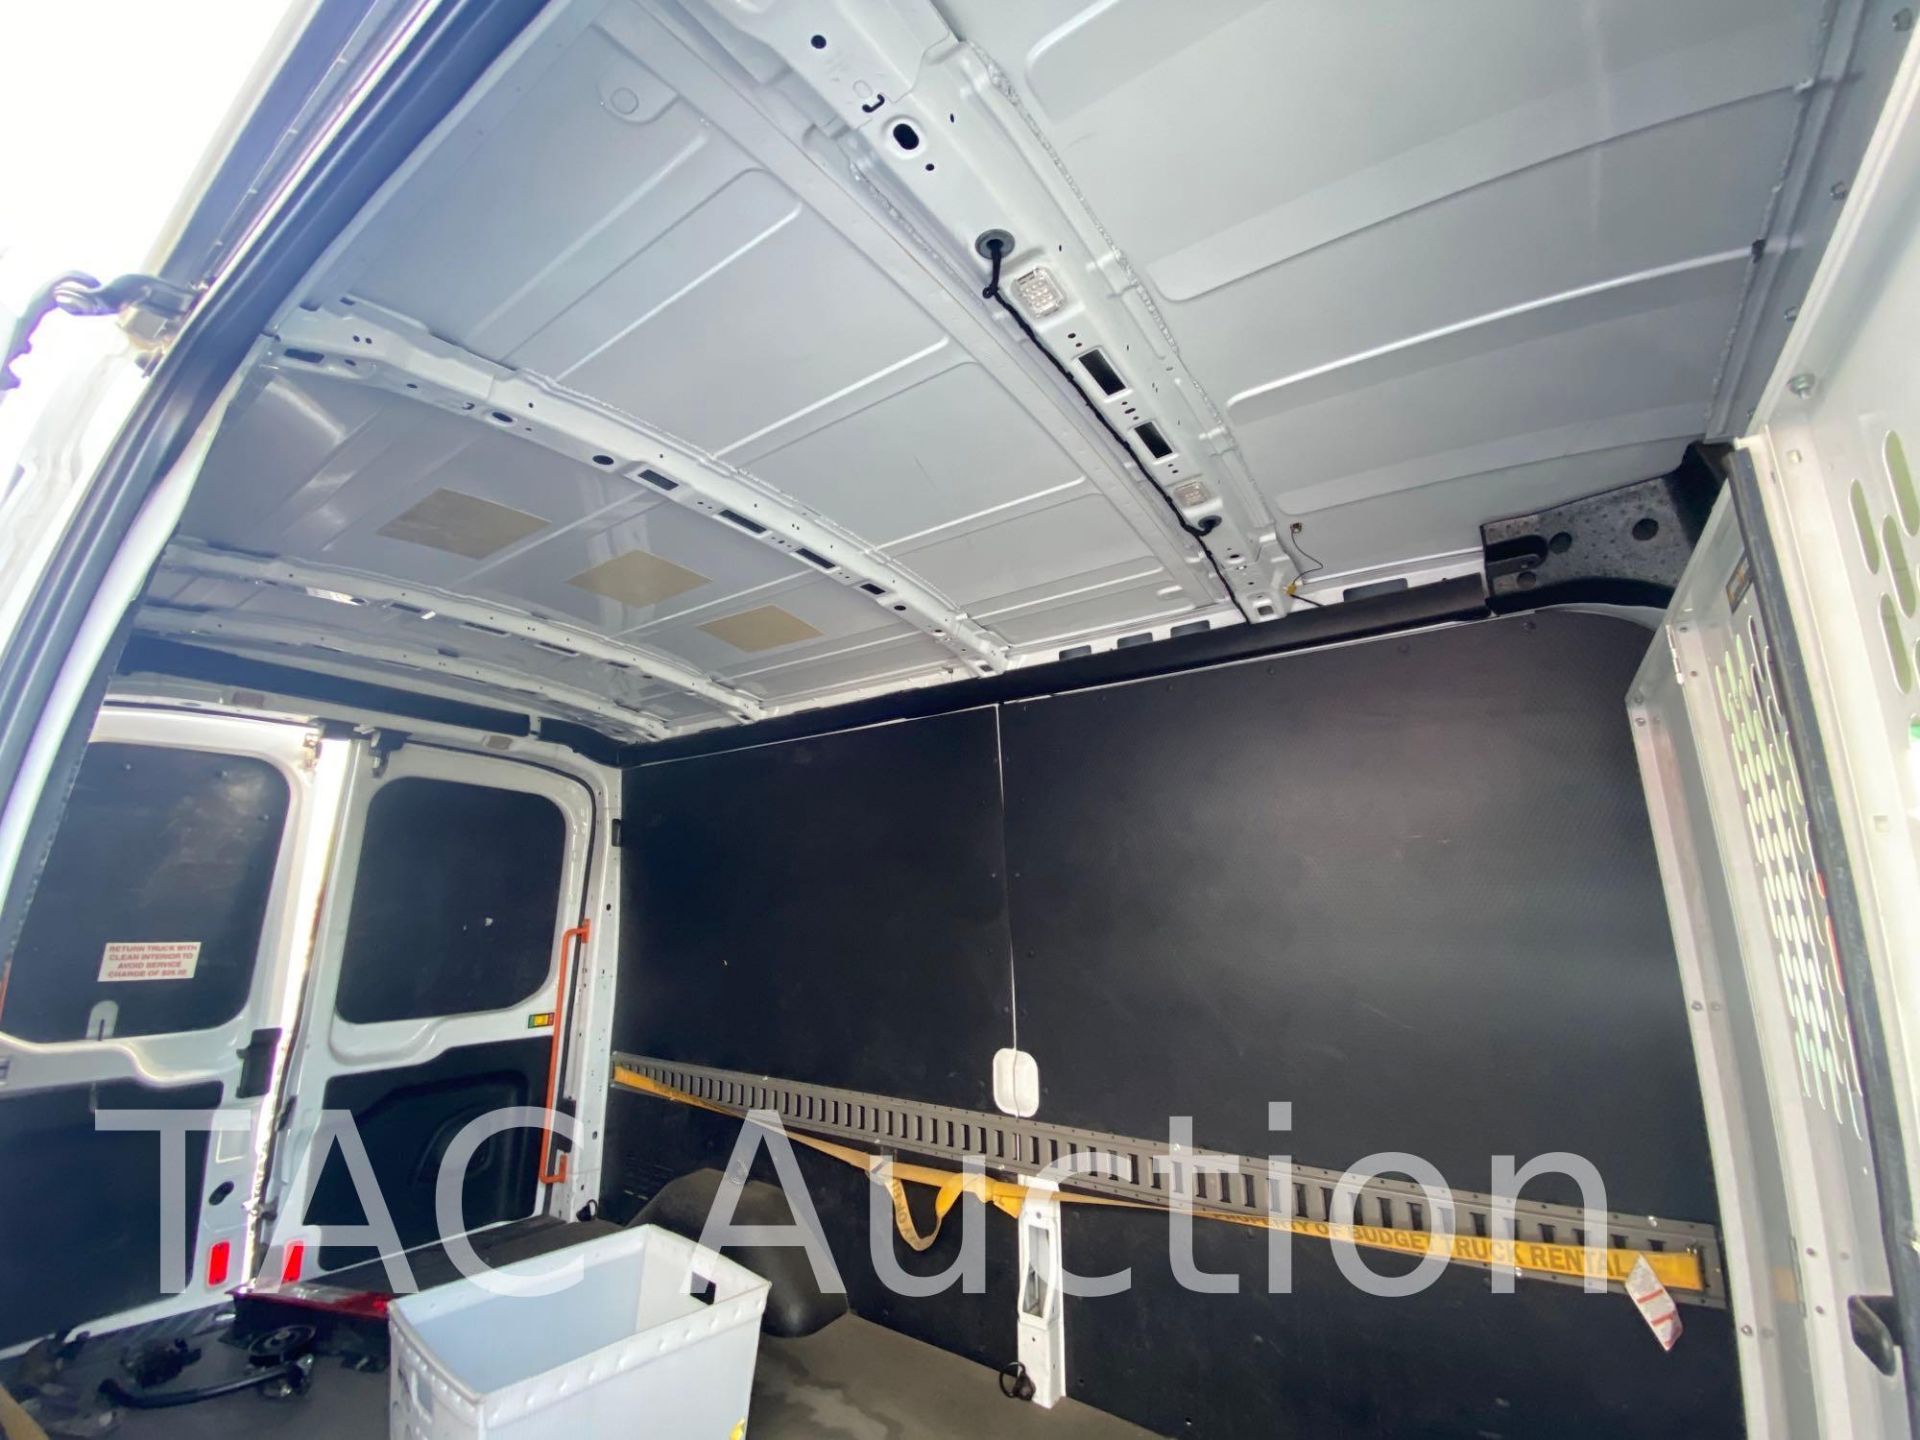 2019 Ford Transit 150 Cargo Van - Image 49 of 84